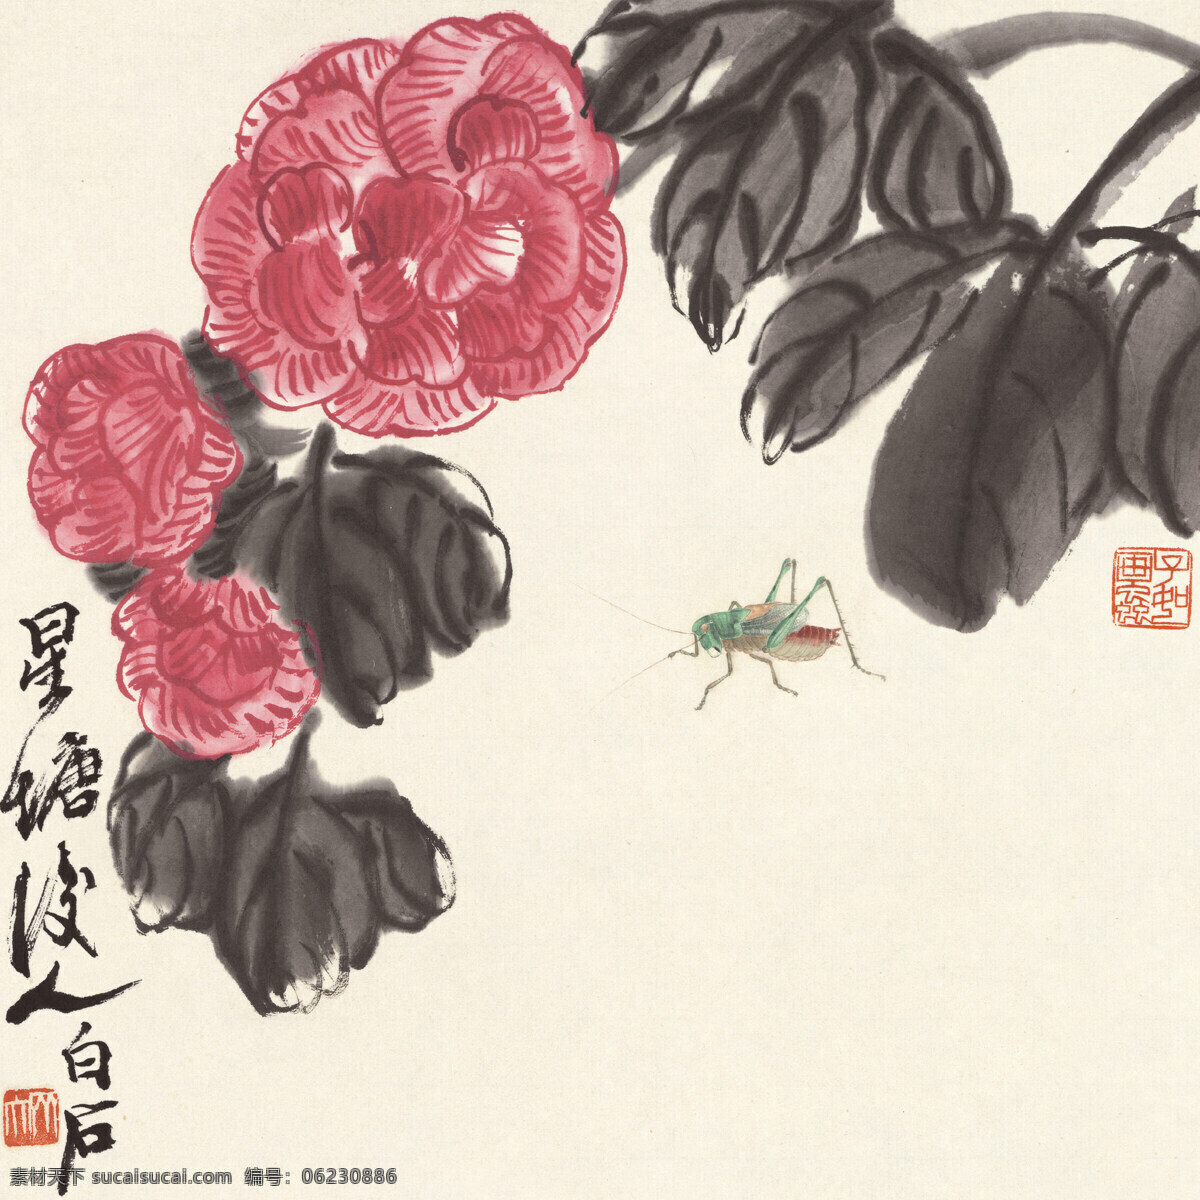 齐白石 册页 花卉 绘画书法 昆虫 蚂蚱 文化艺术 齐白石册页 生物世界